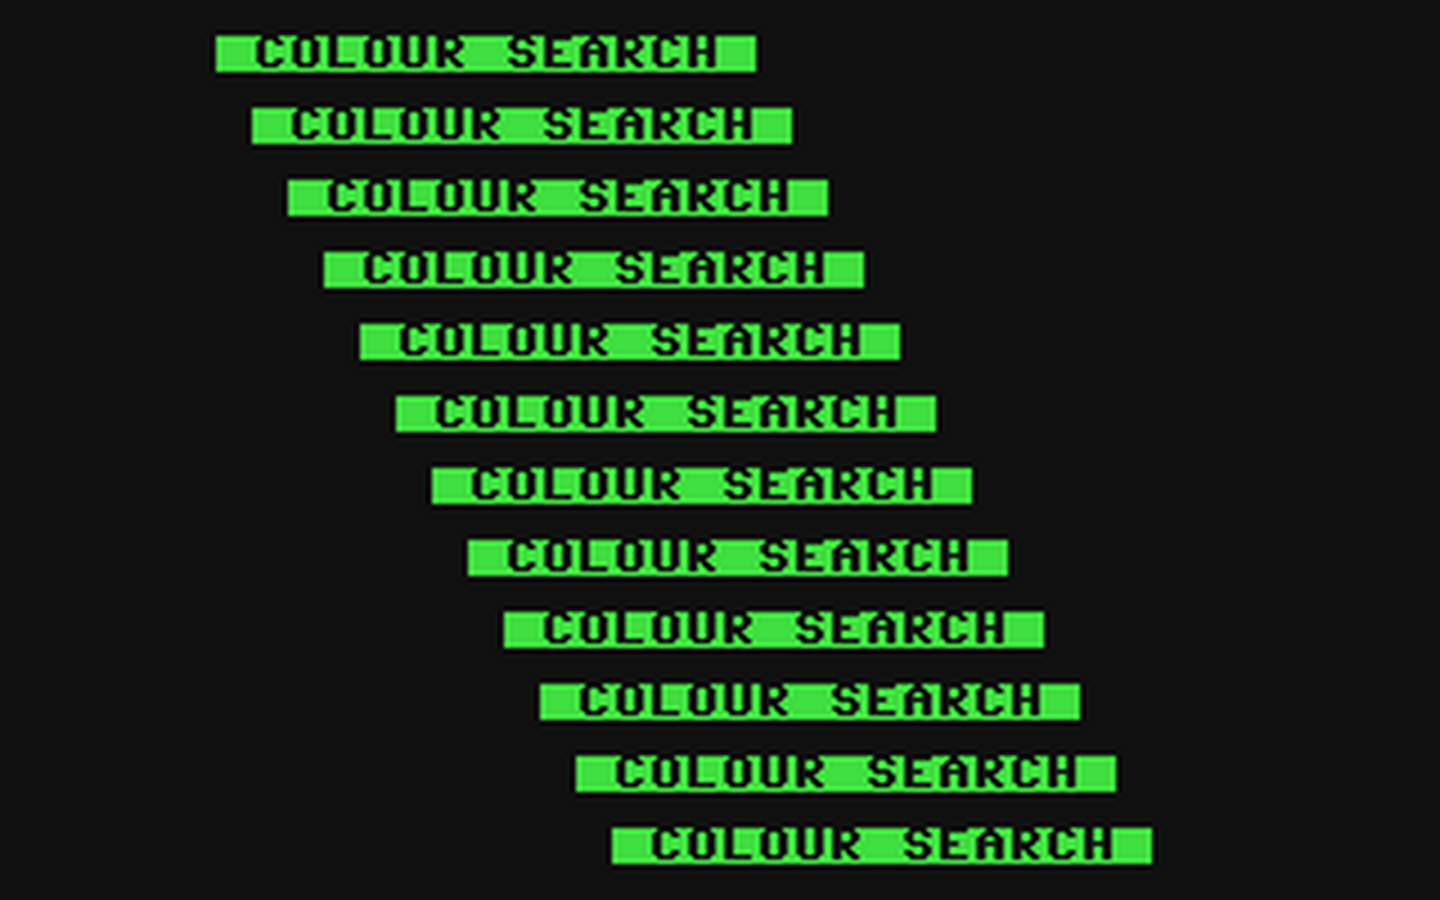 C64 GameBase Colour_Search Edizione_Logica_2000/Videoteca_Computer 1984